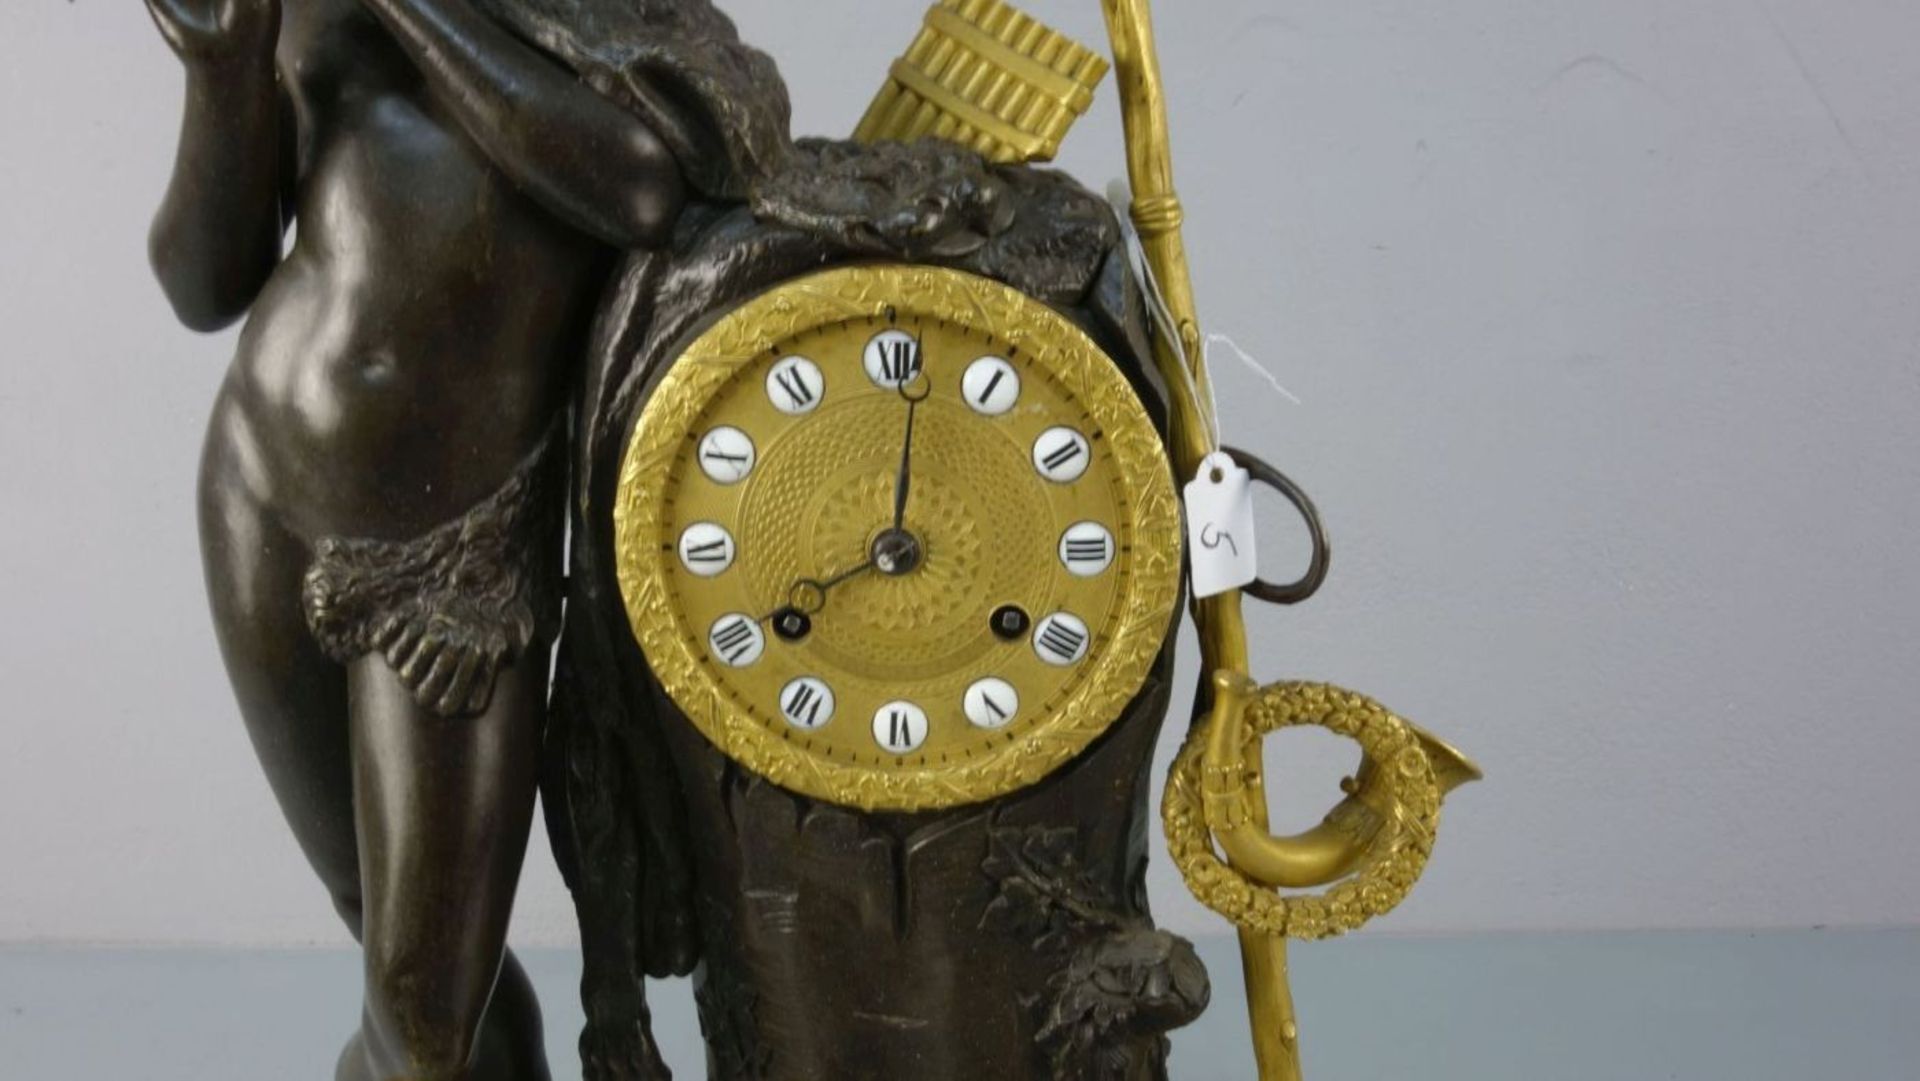 KLASSIZISTISCHE FIGÜRLICHE PENDULE "PAN" / KAMINUHR / fire place clock. Bronze- und Messinggehäuse. - Bild 2 aus 7